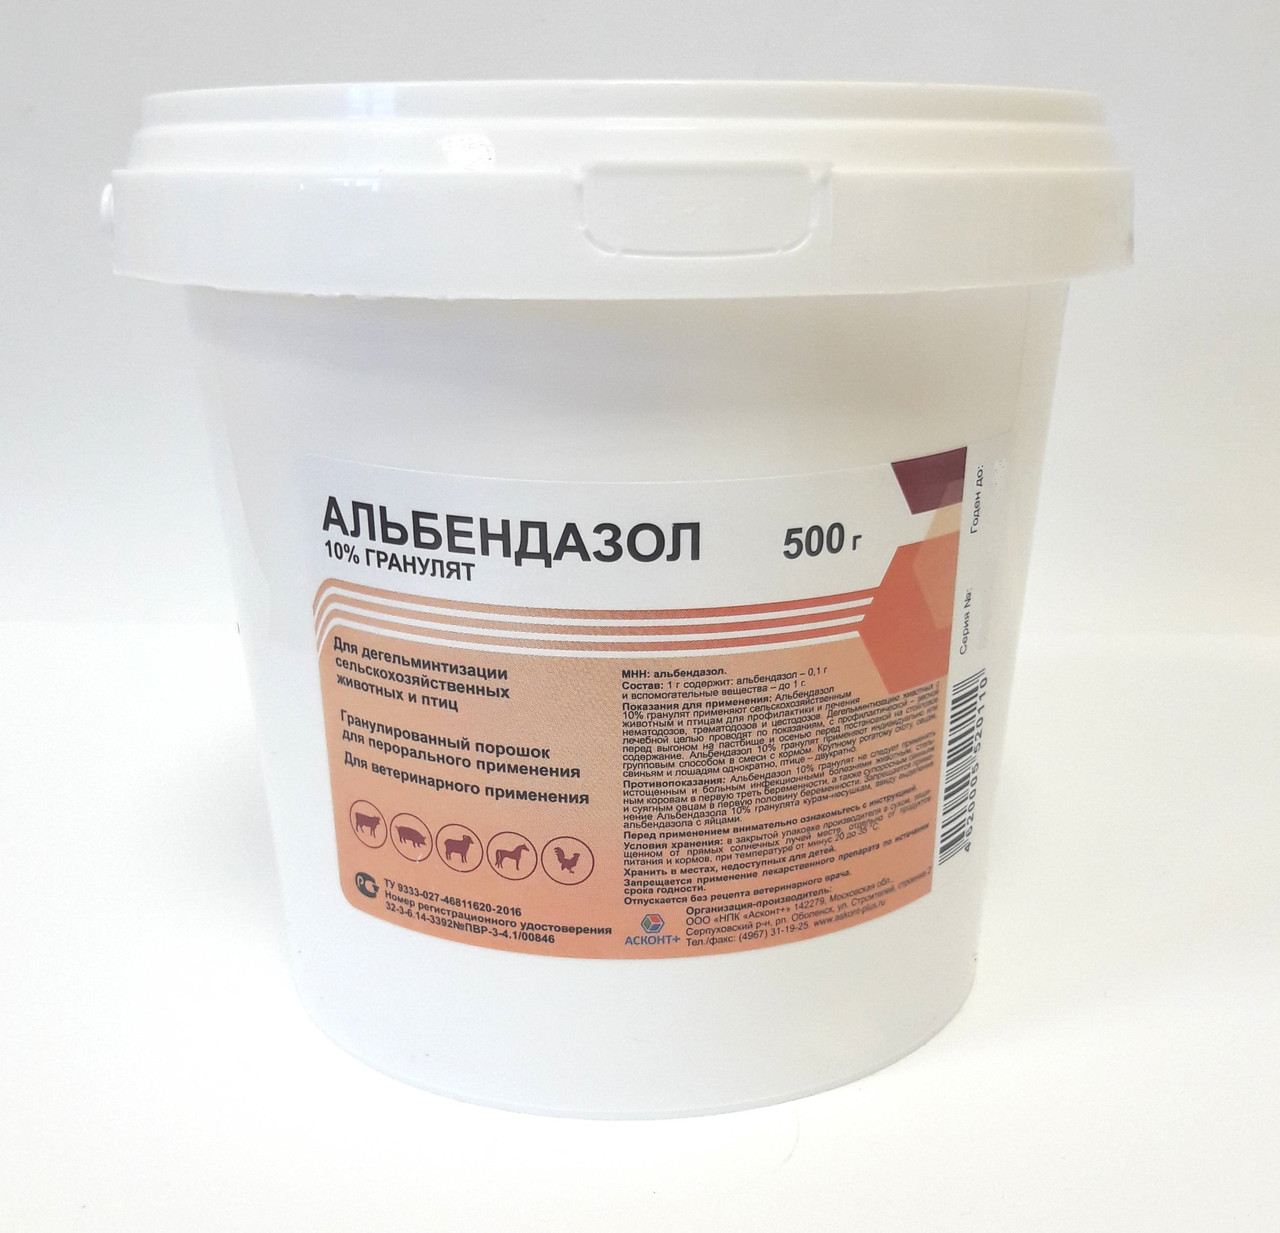 Албендазол 10% гранулянт — инструкция по применению антигельминтика для животных и птиц